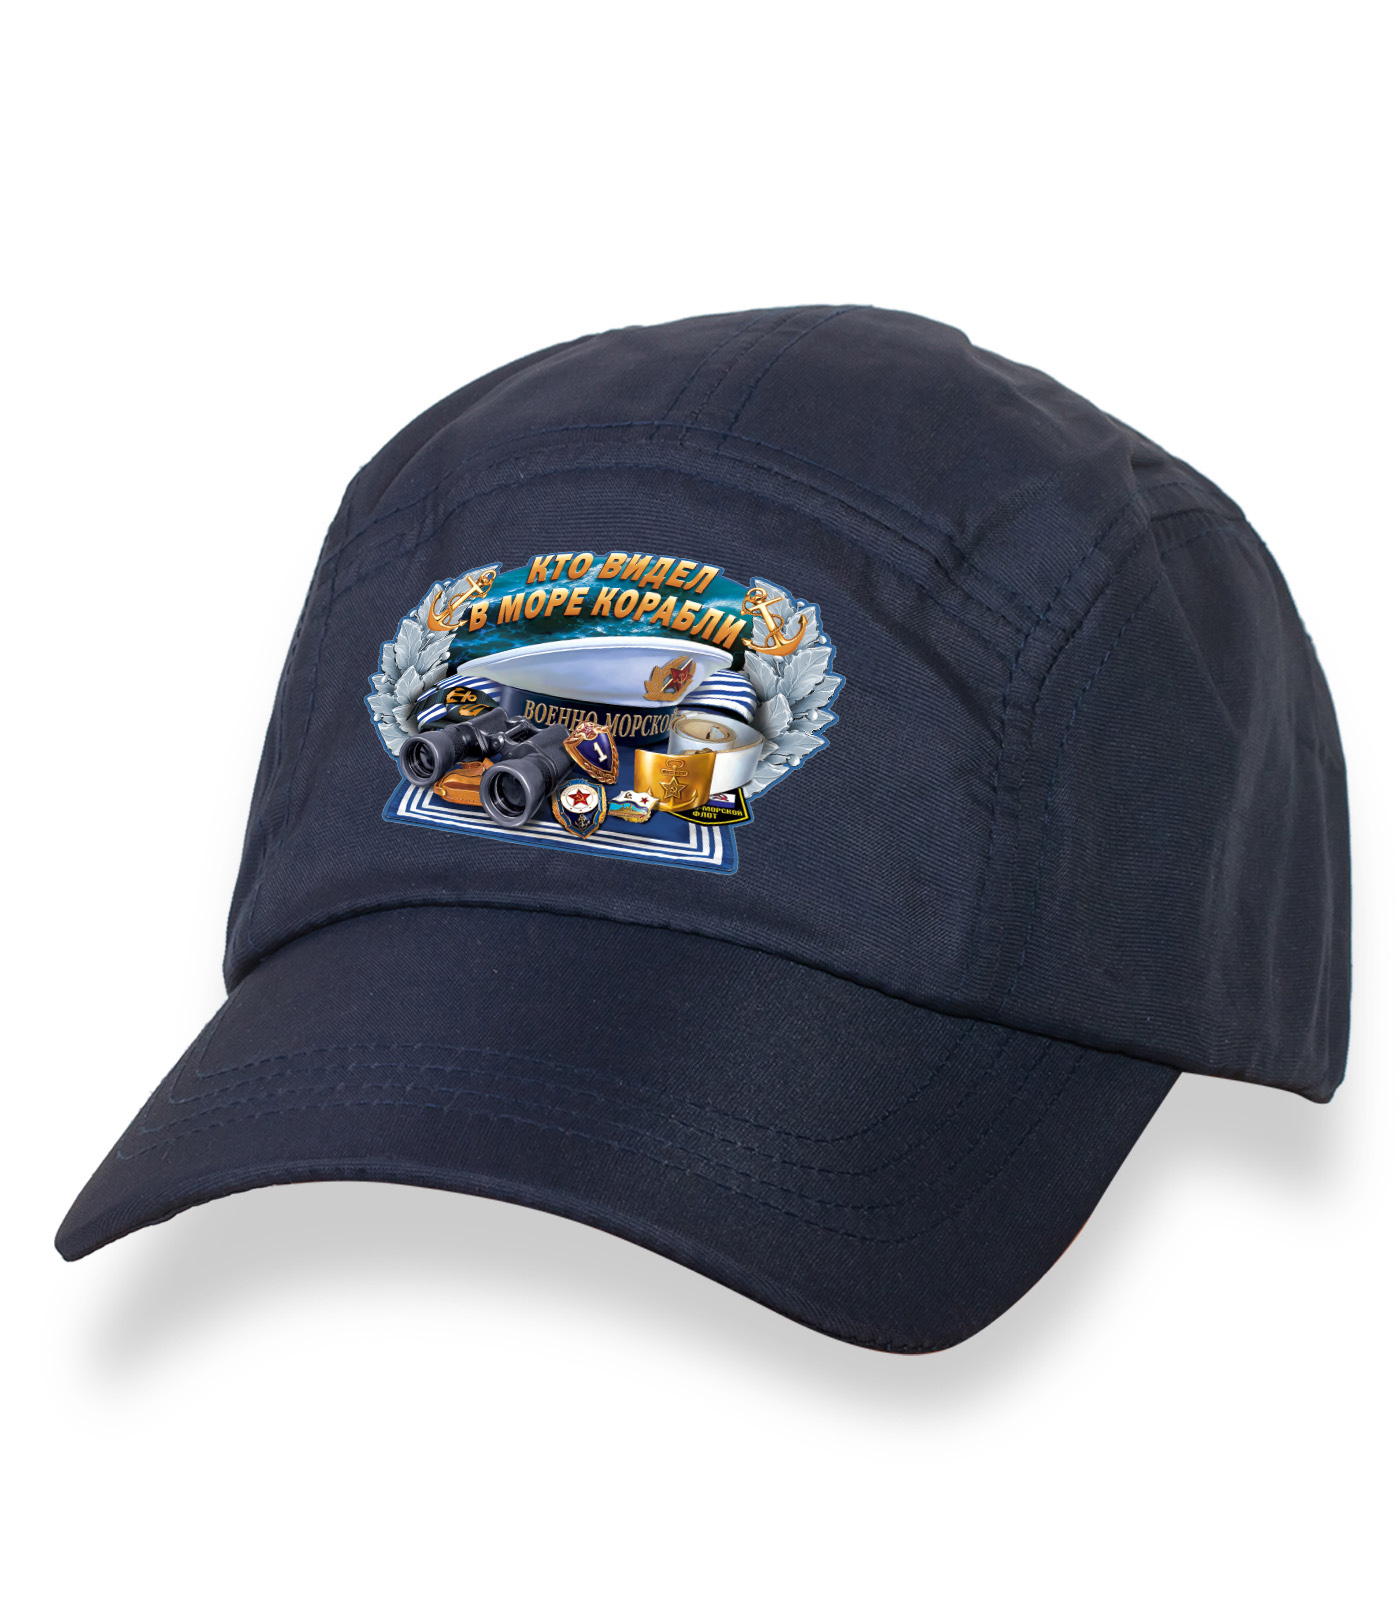 Темно-синяя надежная кепка-пятипанелька с термонаклейкой ВМФ  - ЯРКО украшенный головной убор высокого качества по экономичной цене!